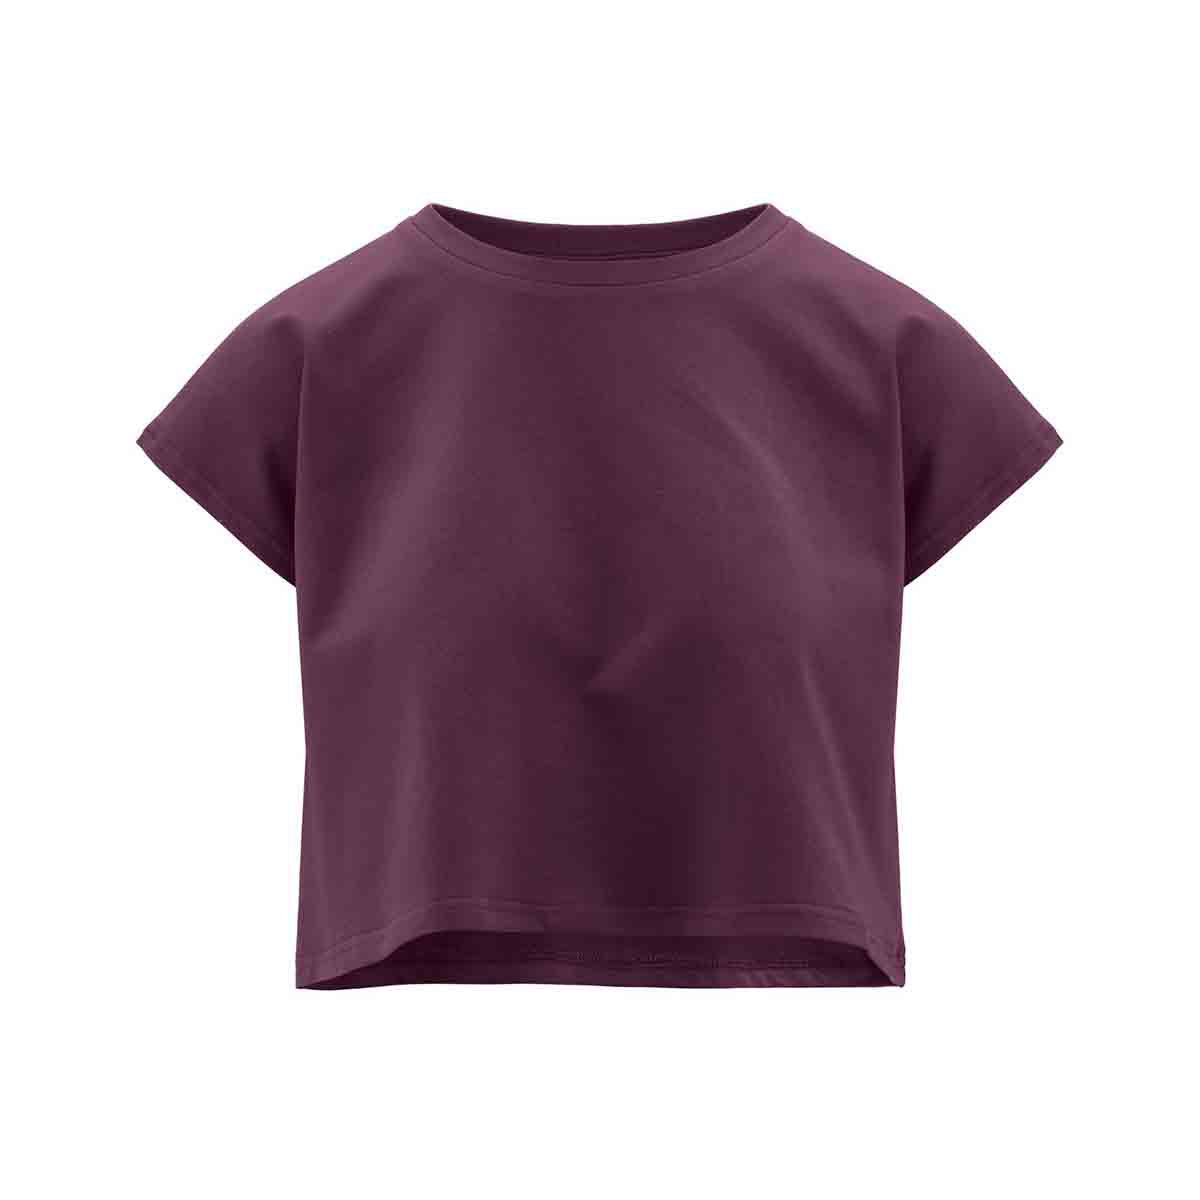 T-shirt femme Lavars Authentic Violet